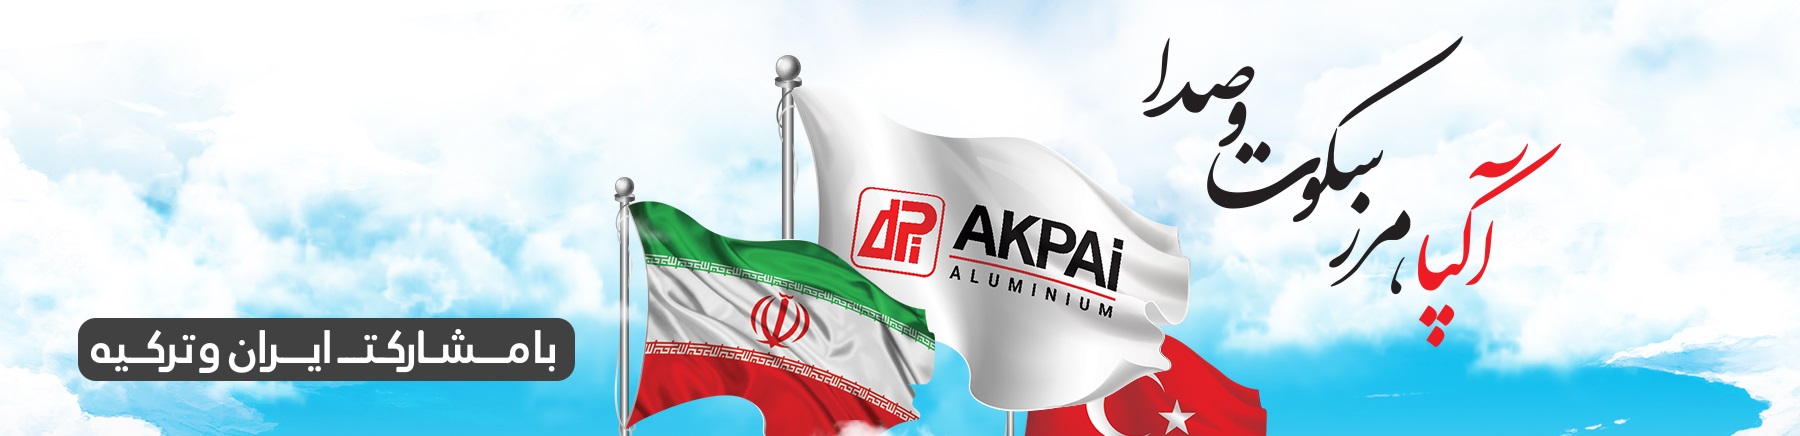 شرکت آکپا ایران کیش